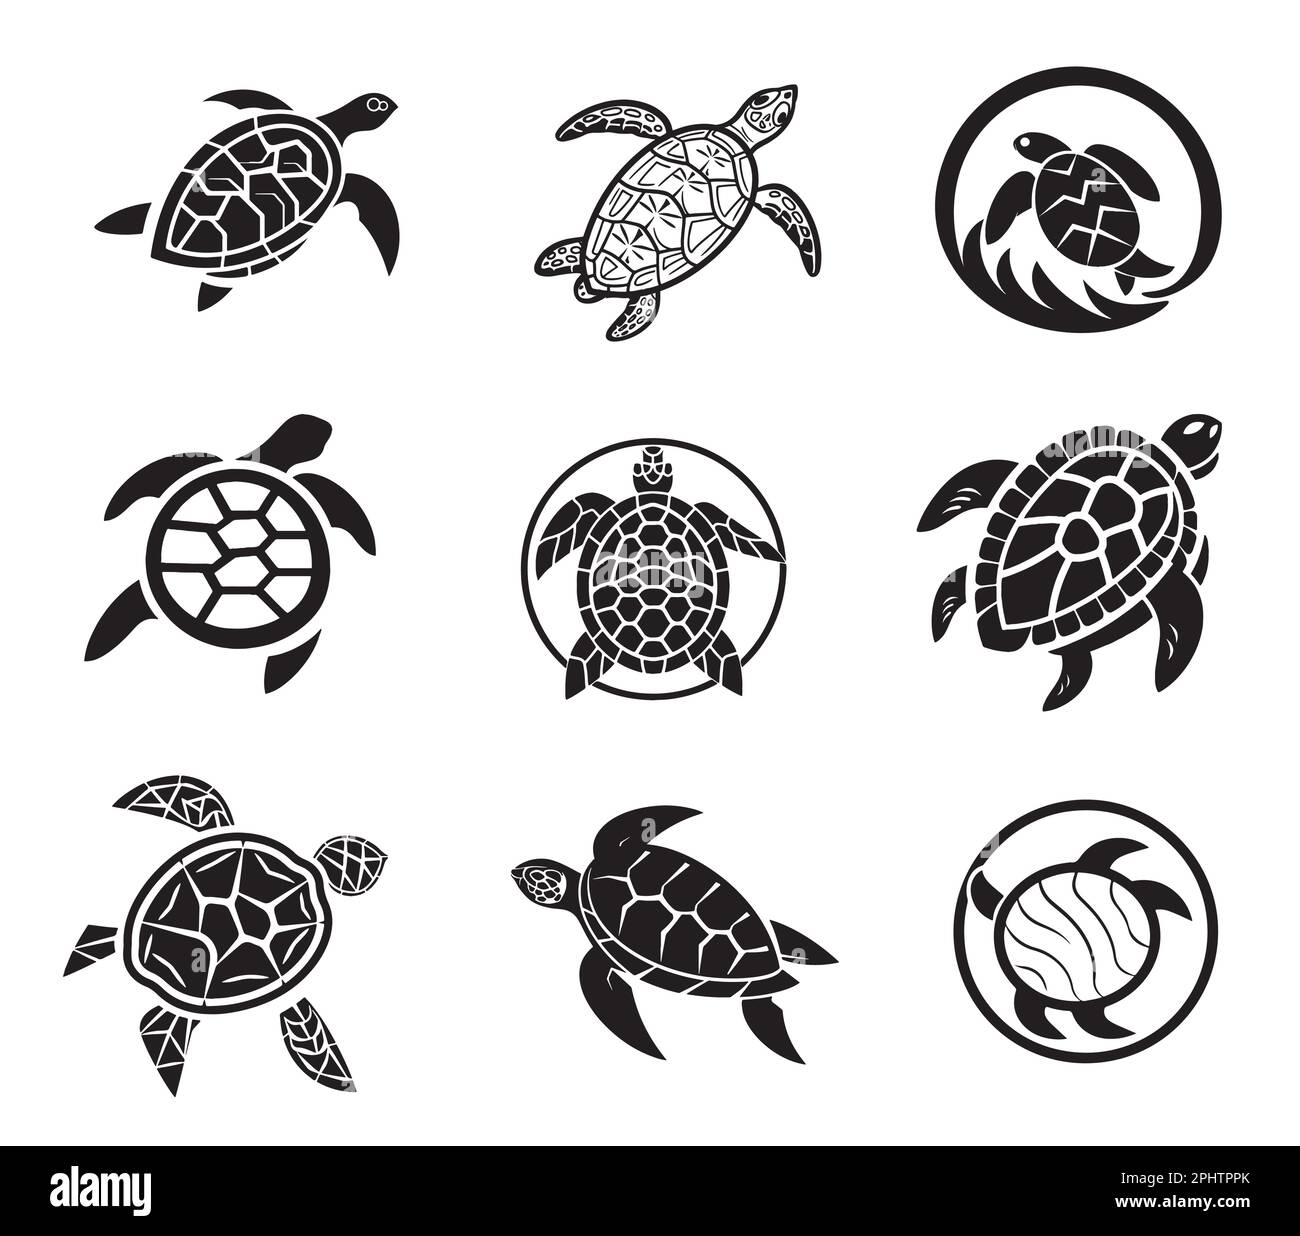 Schildkrötensymbole skizzieren handgezeichnete Illustration Stock Vektor